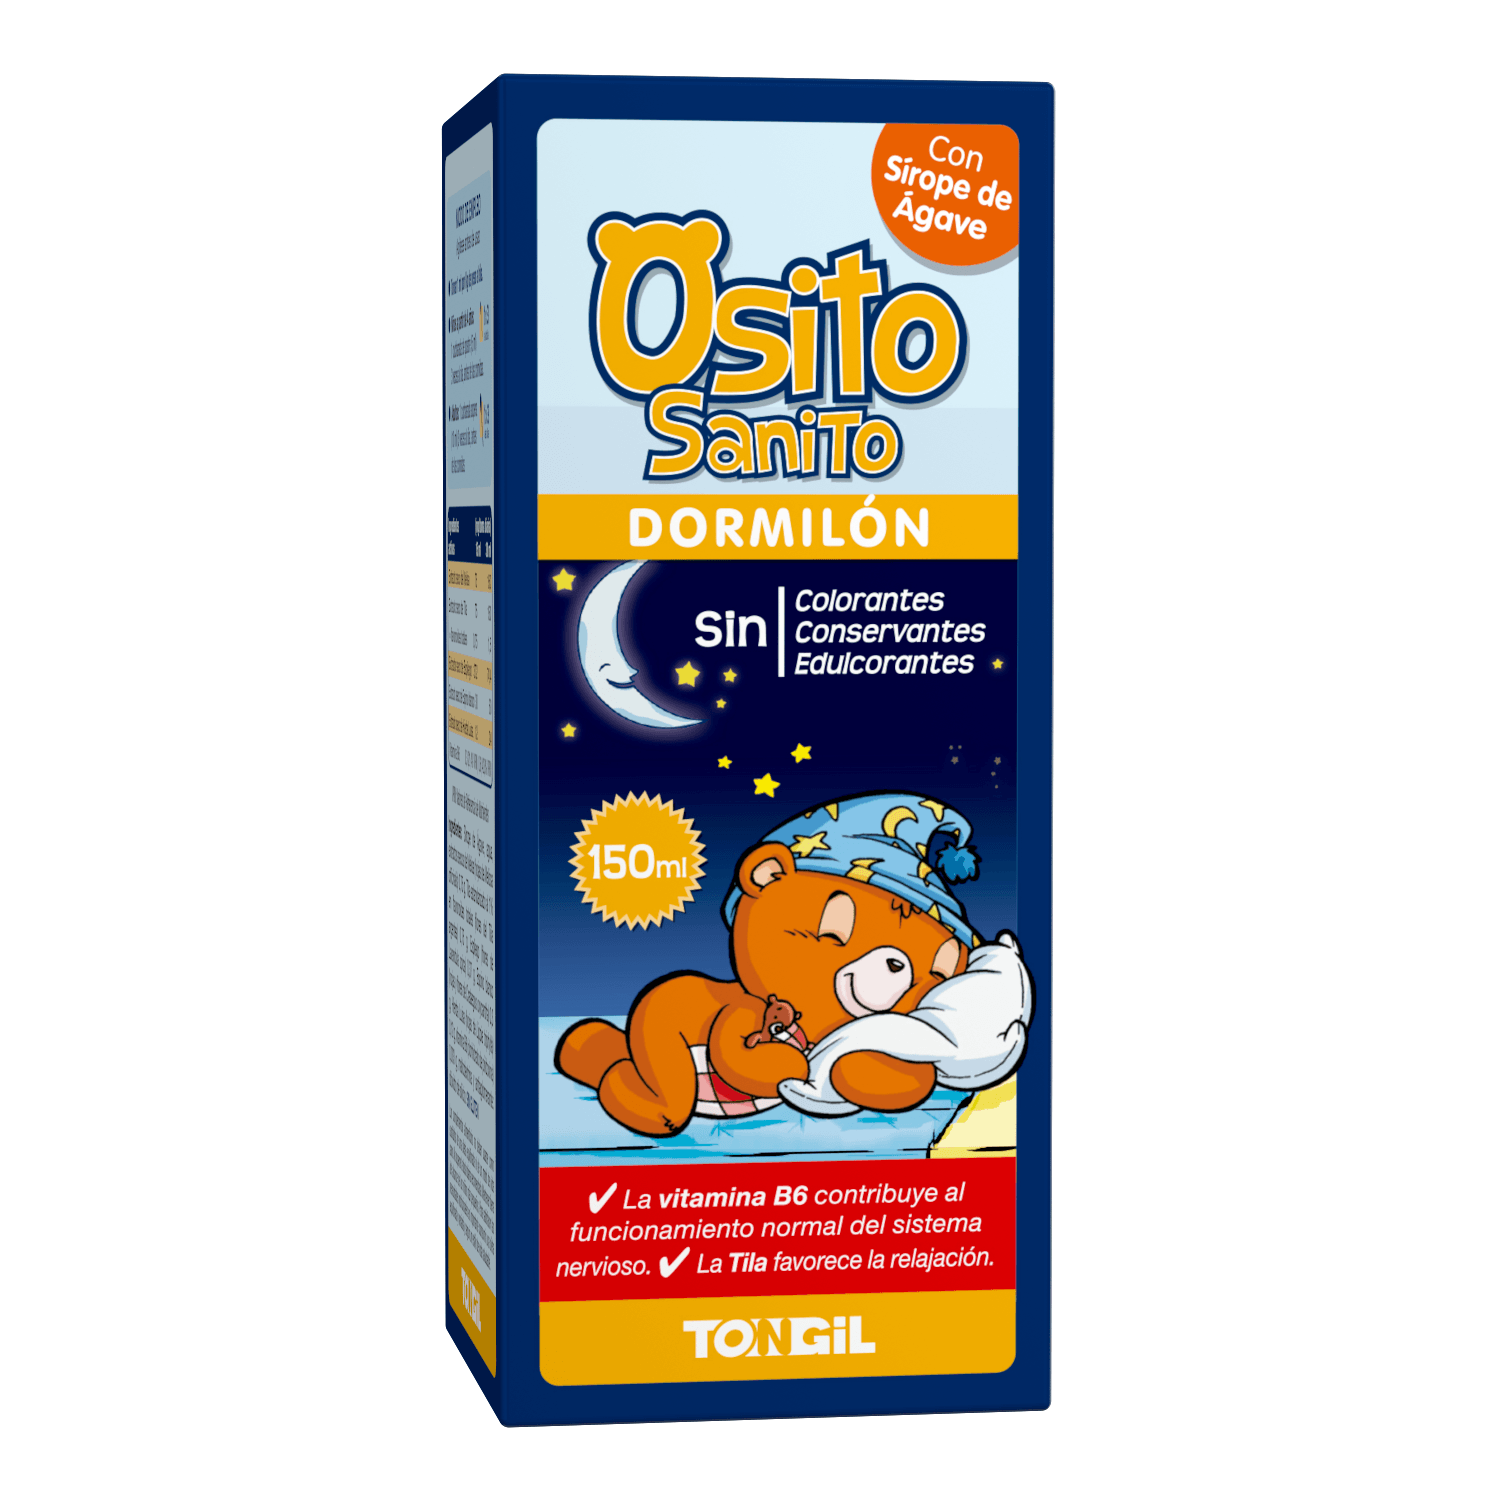 Osito Sanito Dormilon 150 ml | Tongil - Dietetica Ferrer